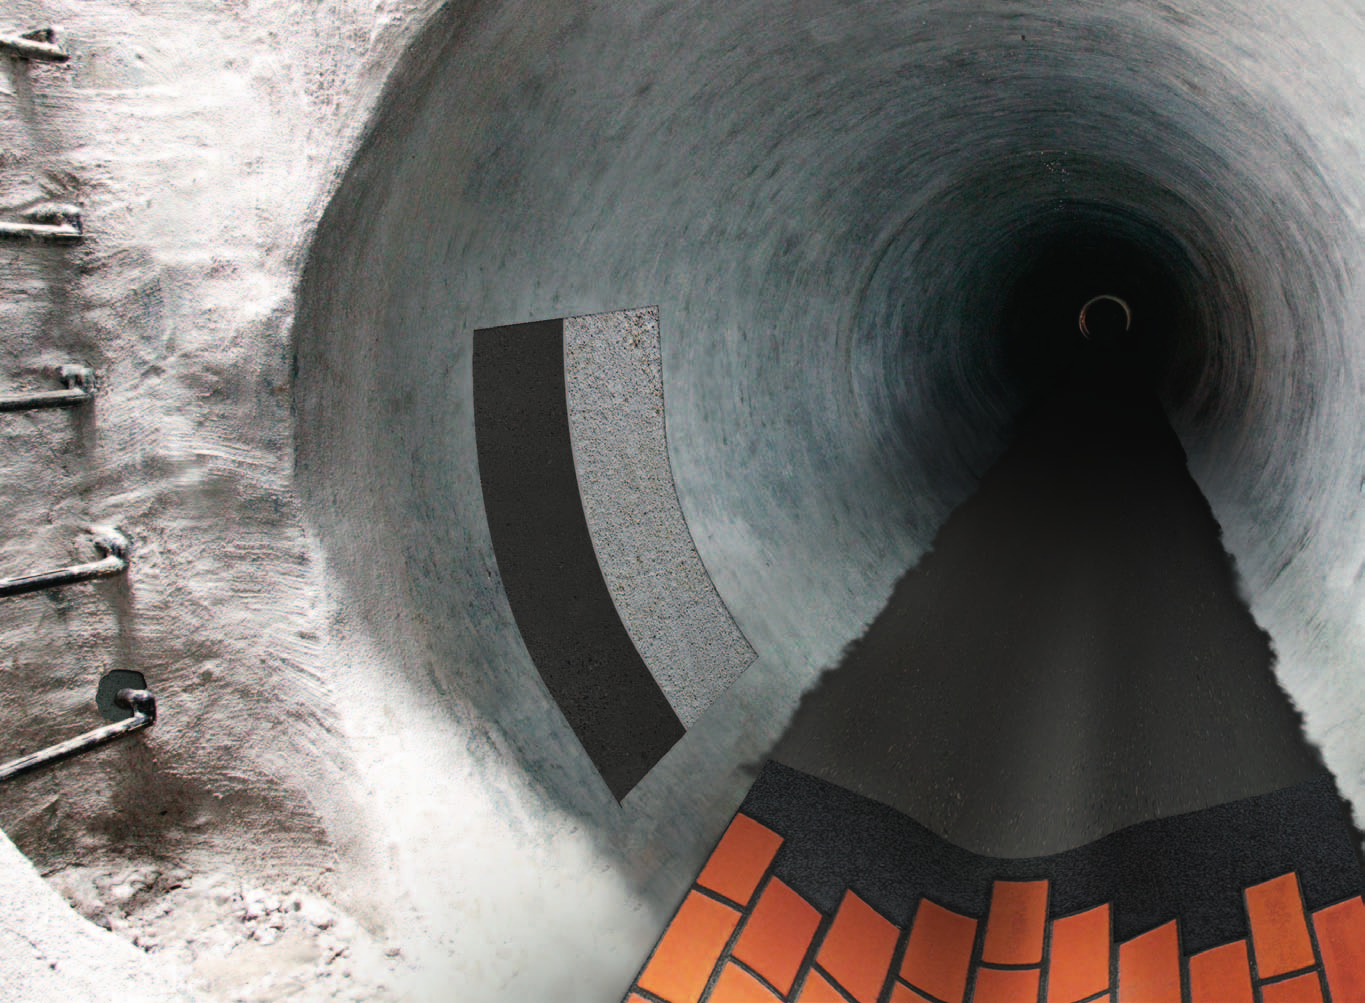 Systém pro sanaci kanalizace 4 cementová izolace Idrosilex Pronto hrubá sanace Mapegrout Rapido otryskaný beton